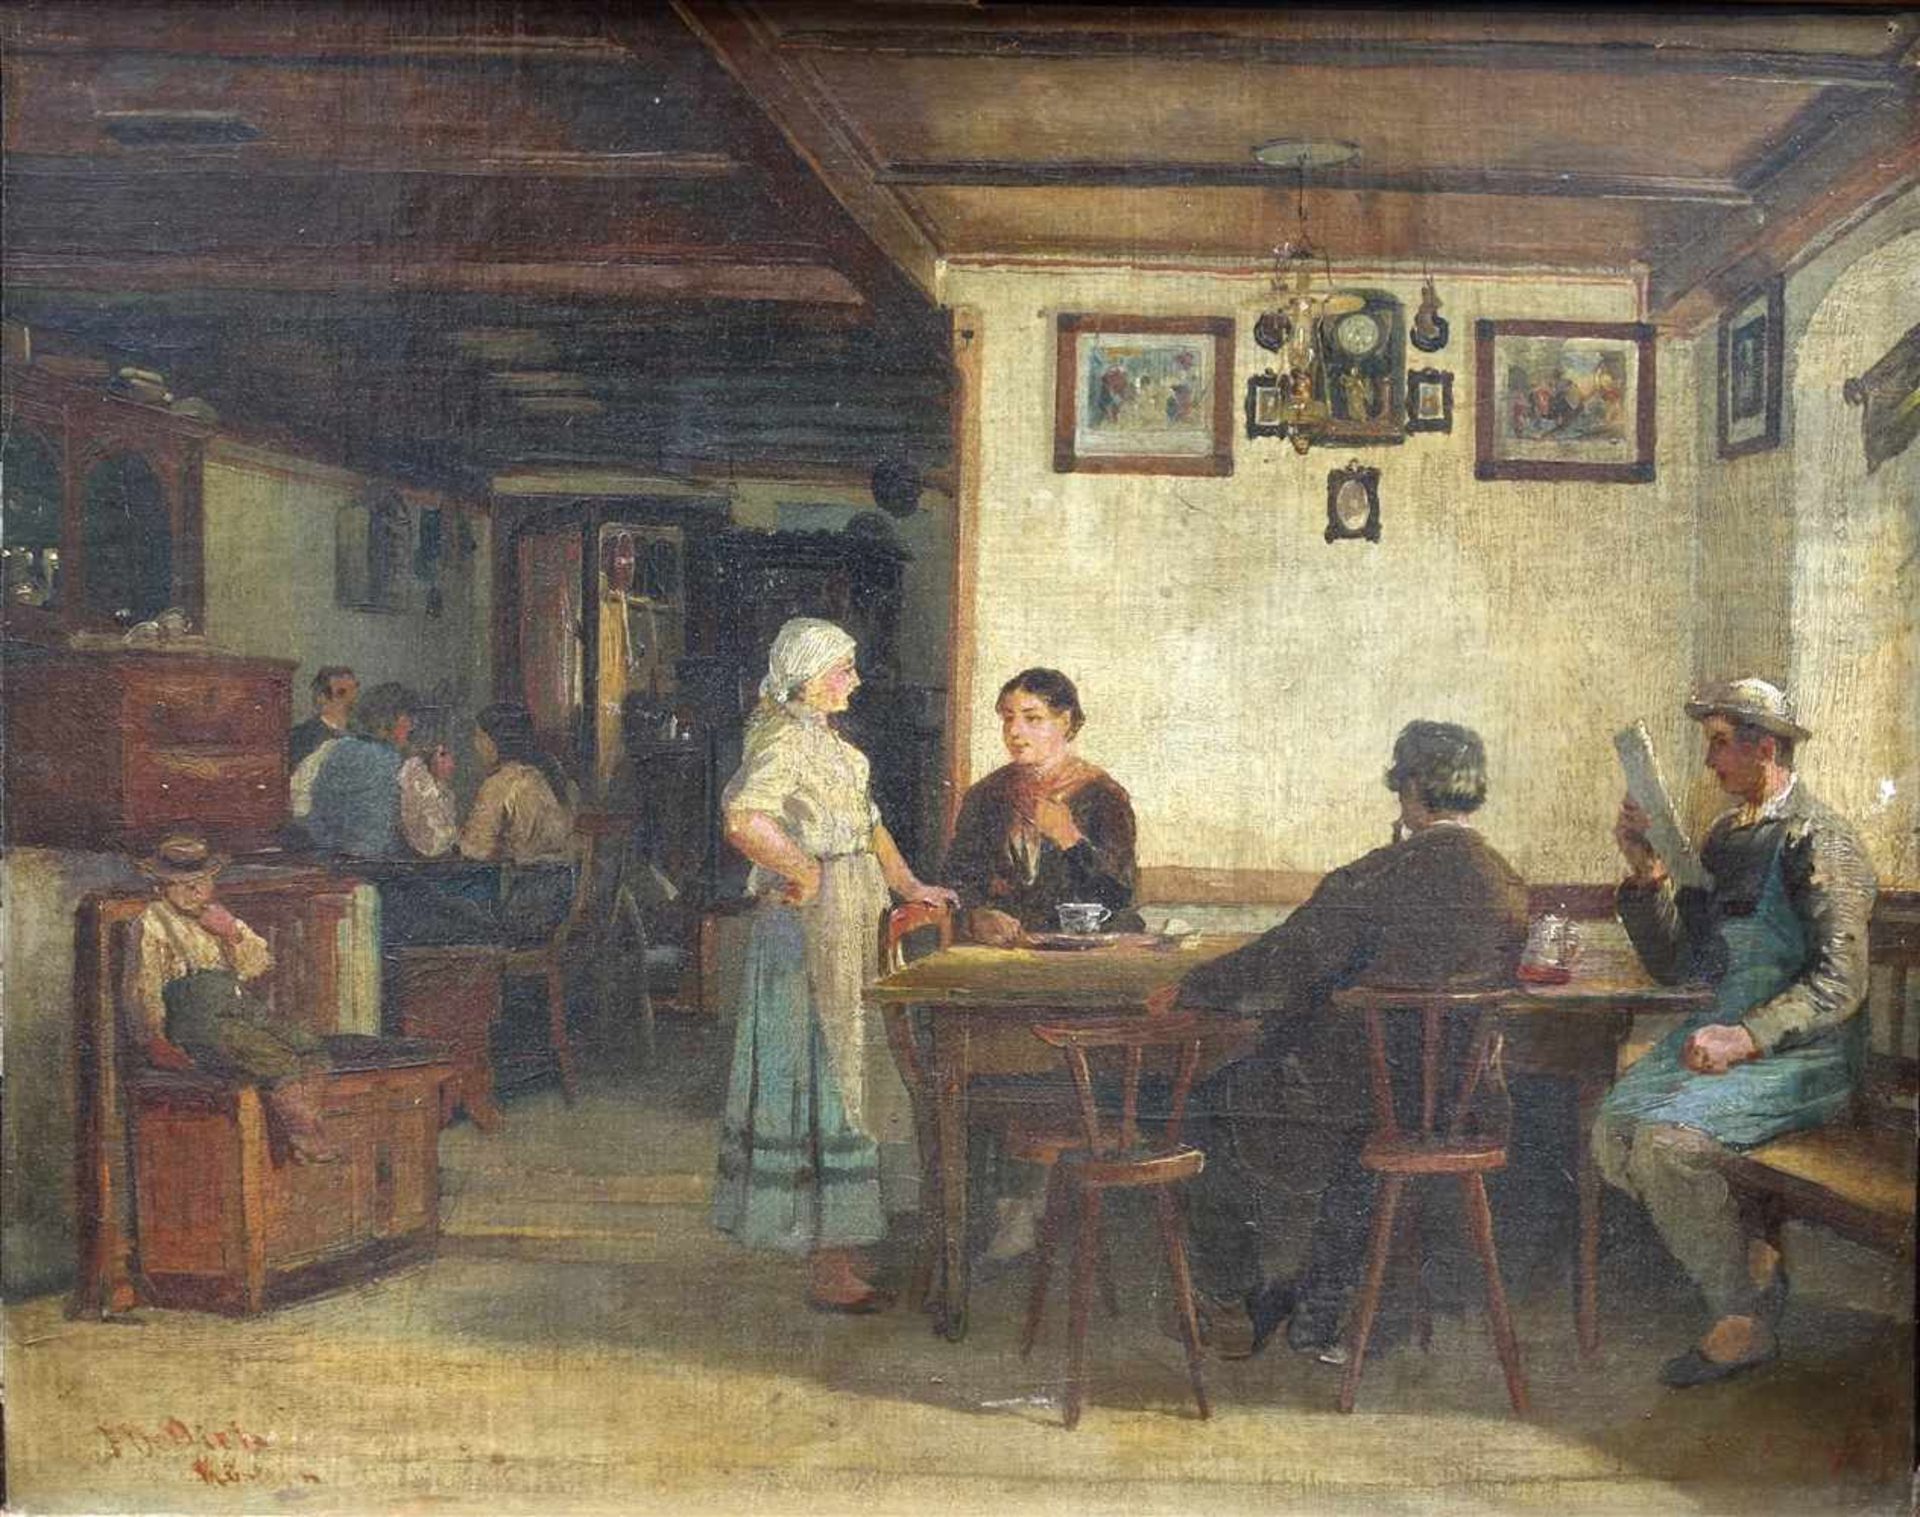 Münchner Genremaler des 19. Jh., "Teestunde im Gasthaus", detaillierte Interieurdarstellung mit